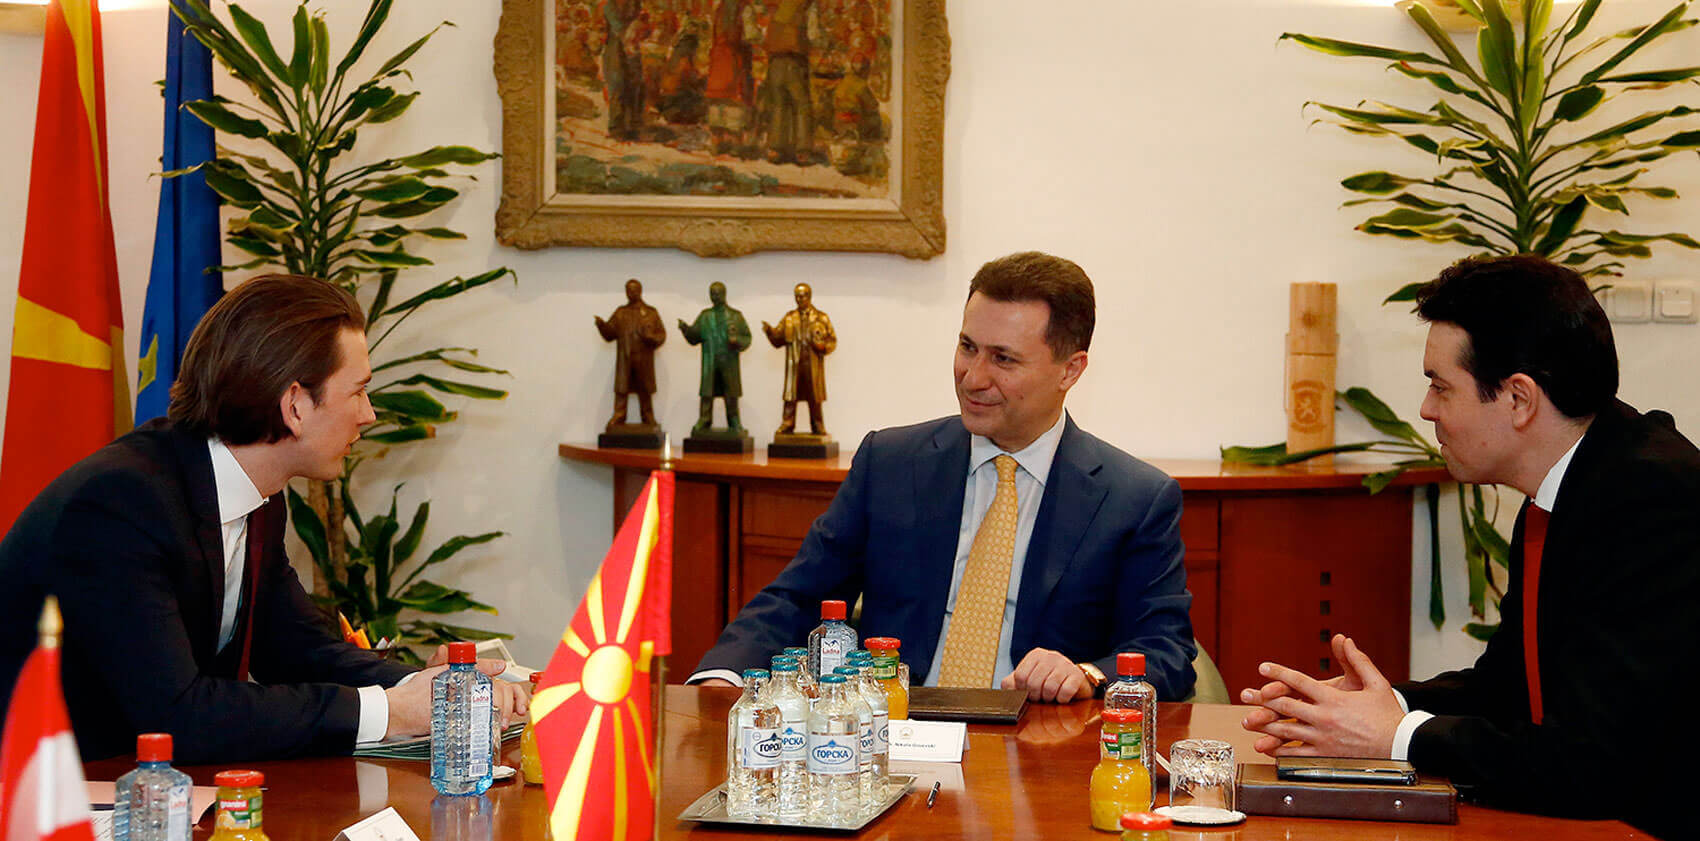 Spektakuläre Flucht nach Korruptionsurteil: Mazedonischer Ex-Premier Gruevski will Asyl von Orbán